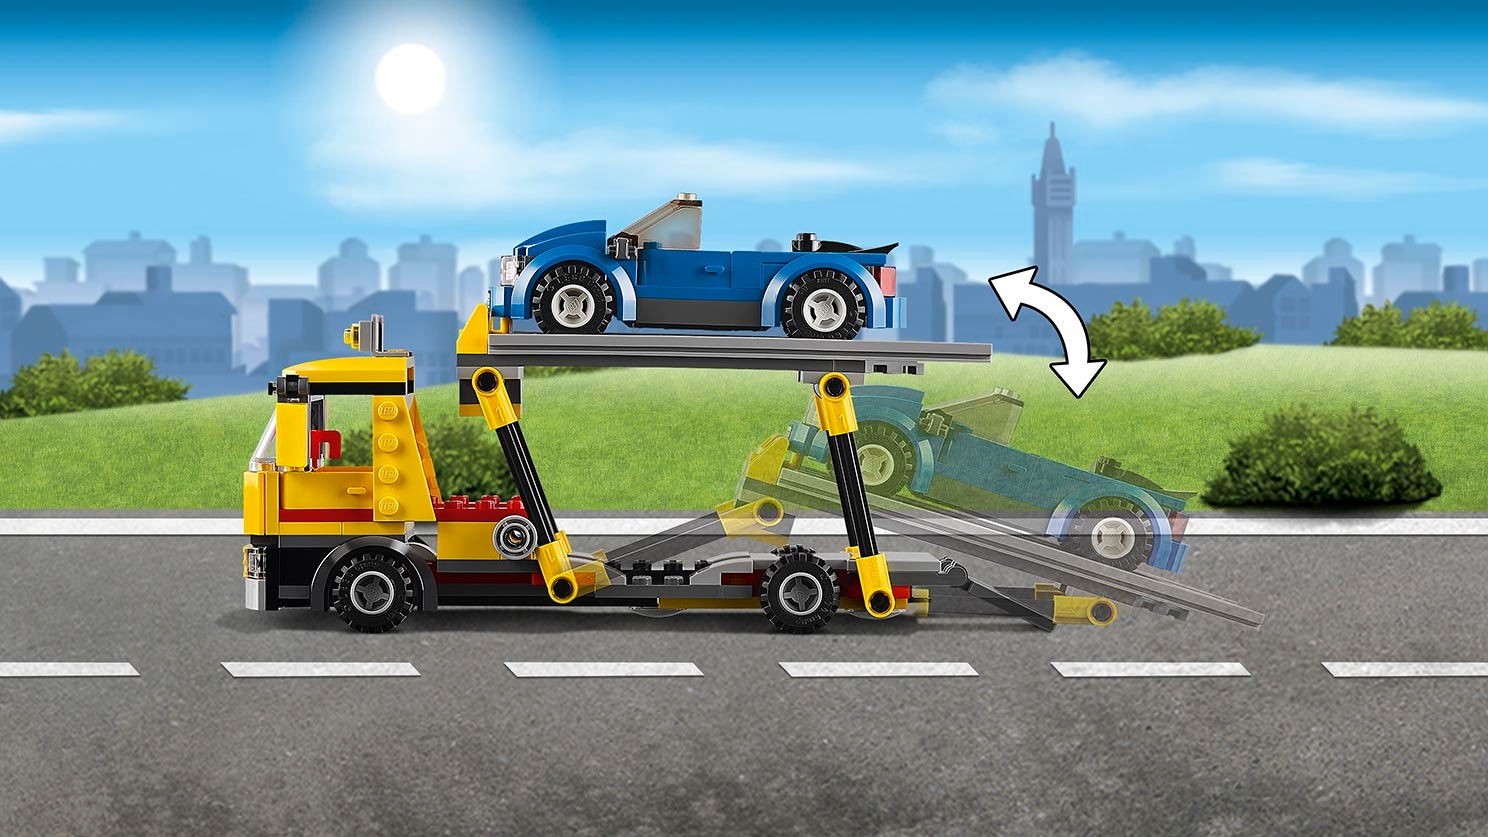 Auto Transporter - Videos - LEGO.com for kids